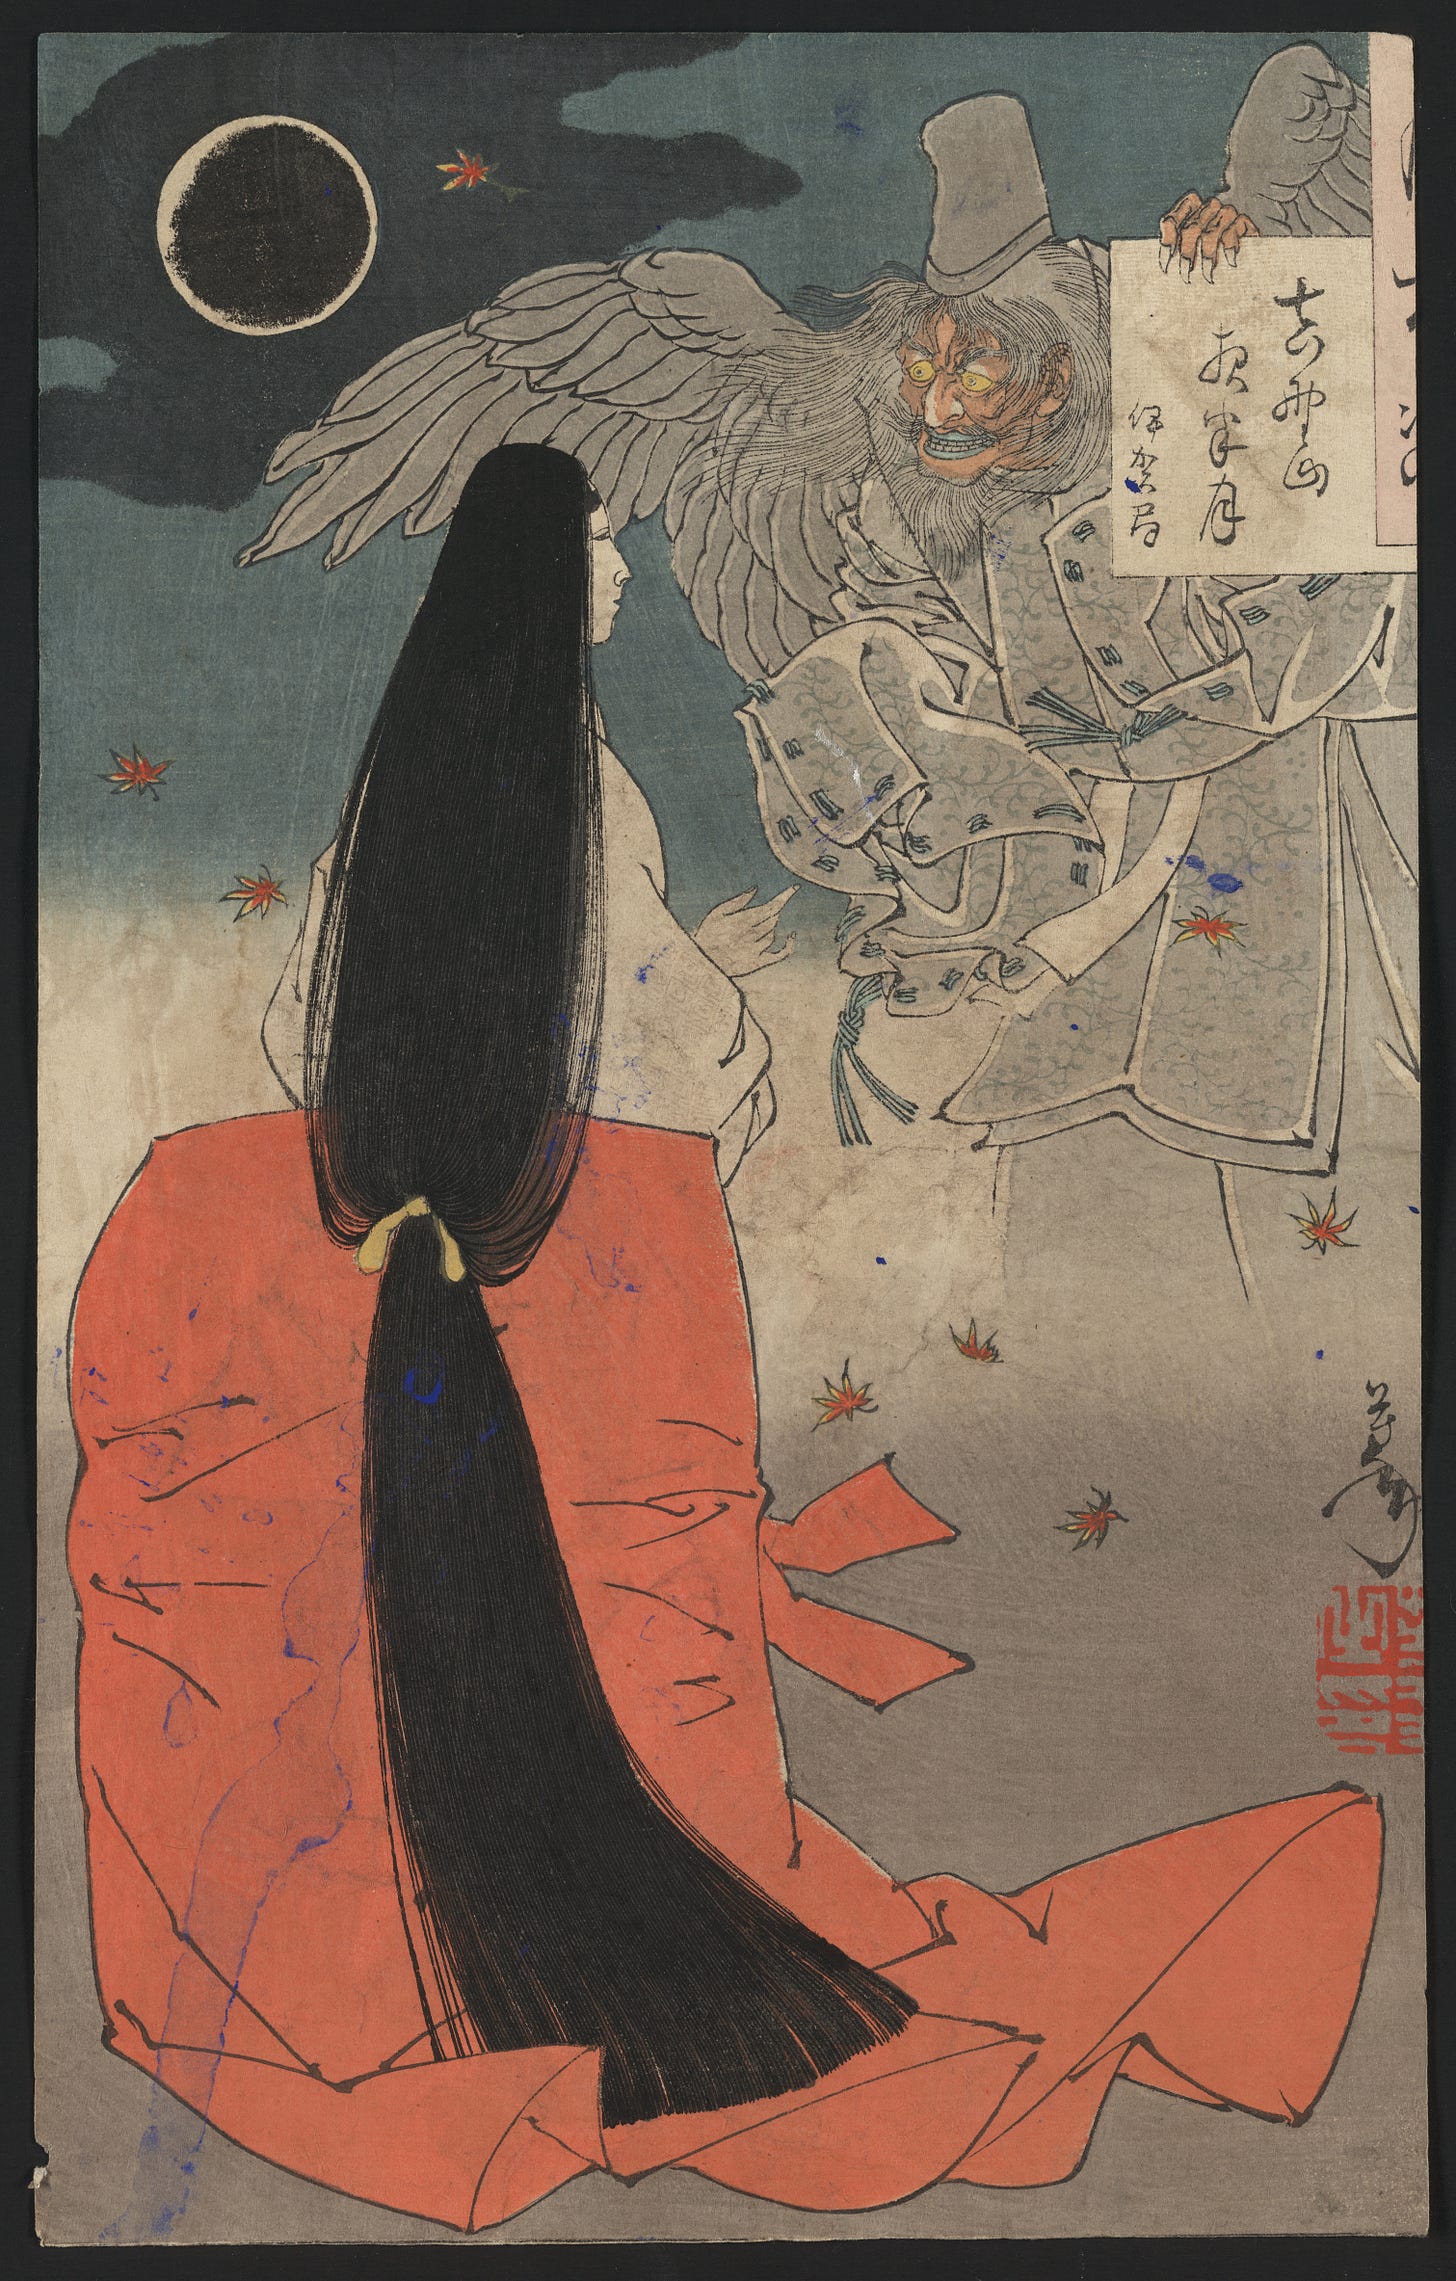 Manosan yowa no tsuki (1880) by Tsukioka Yoshitoshi (Japanese, 1839-1892)